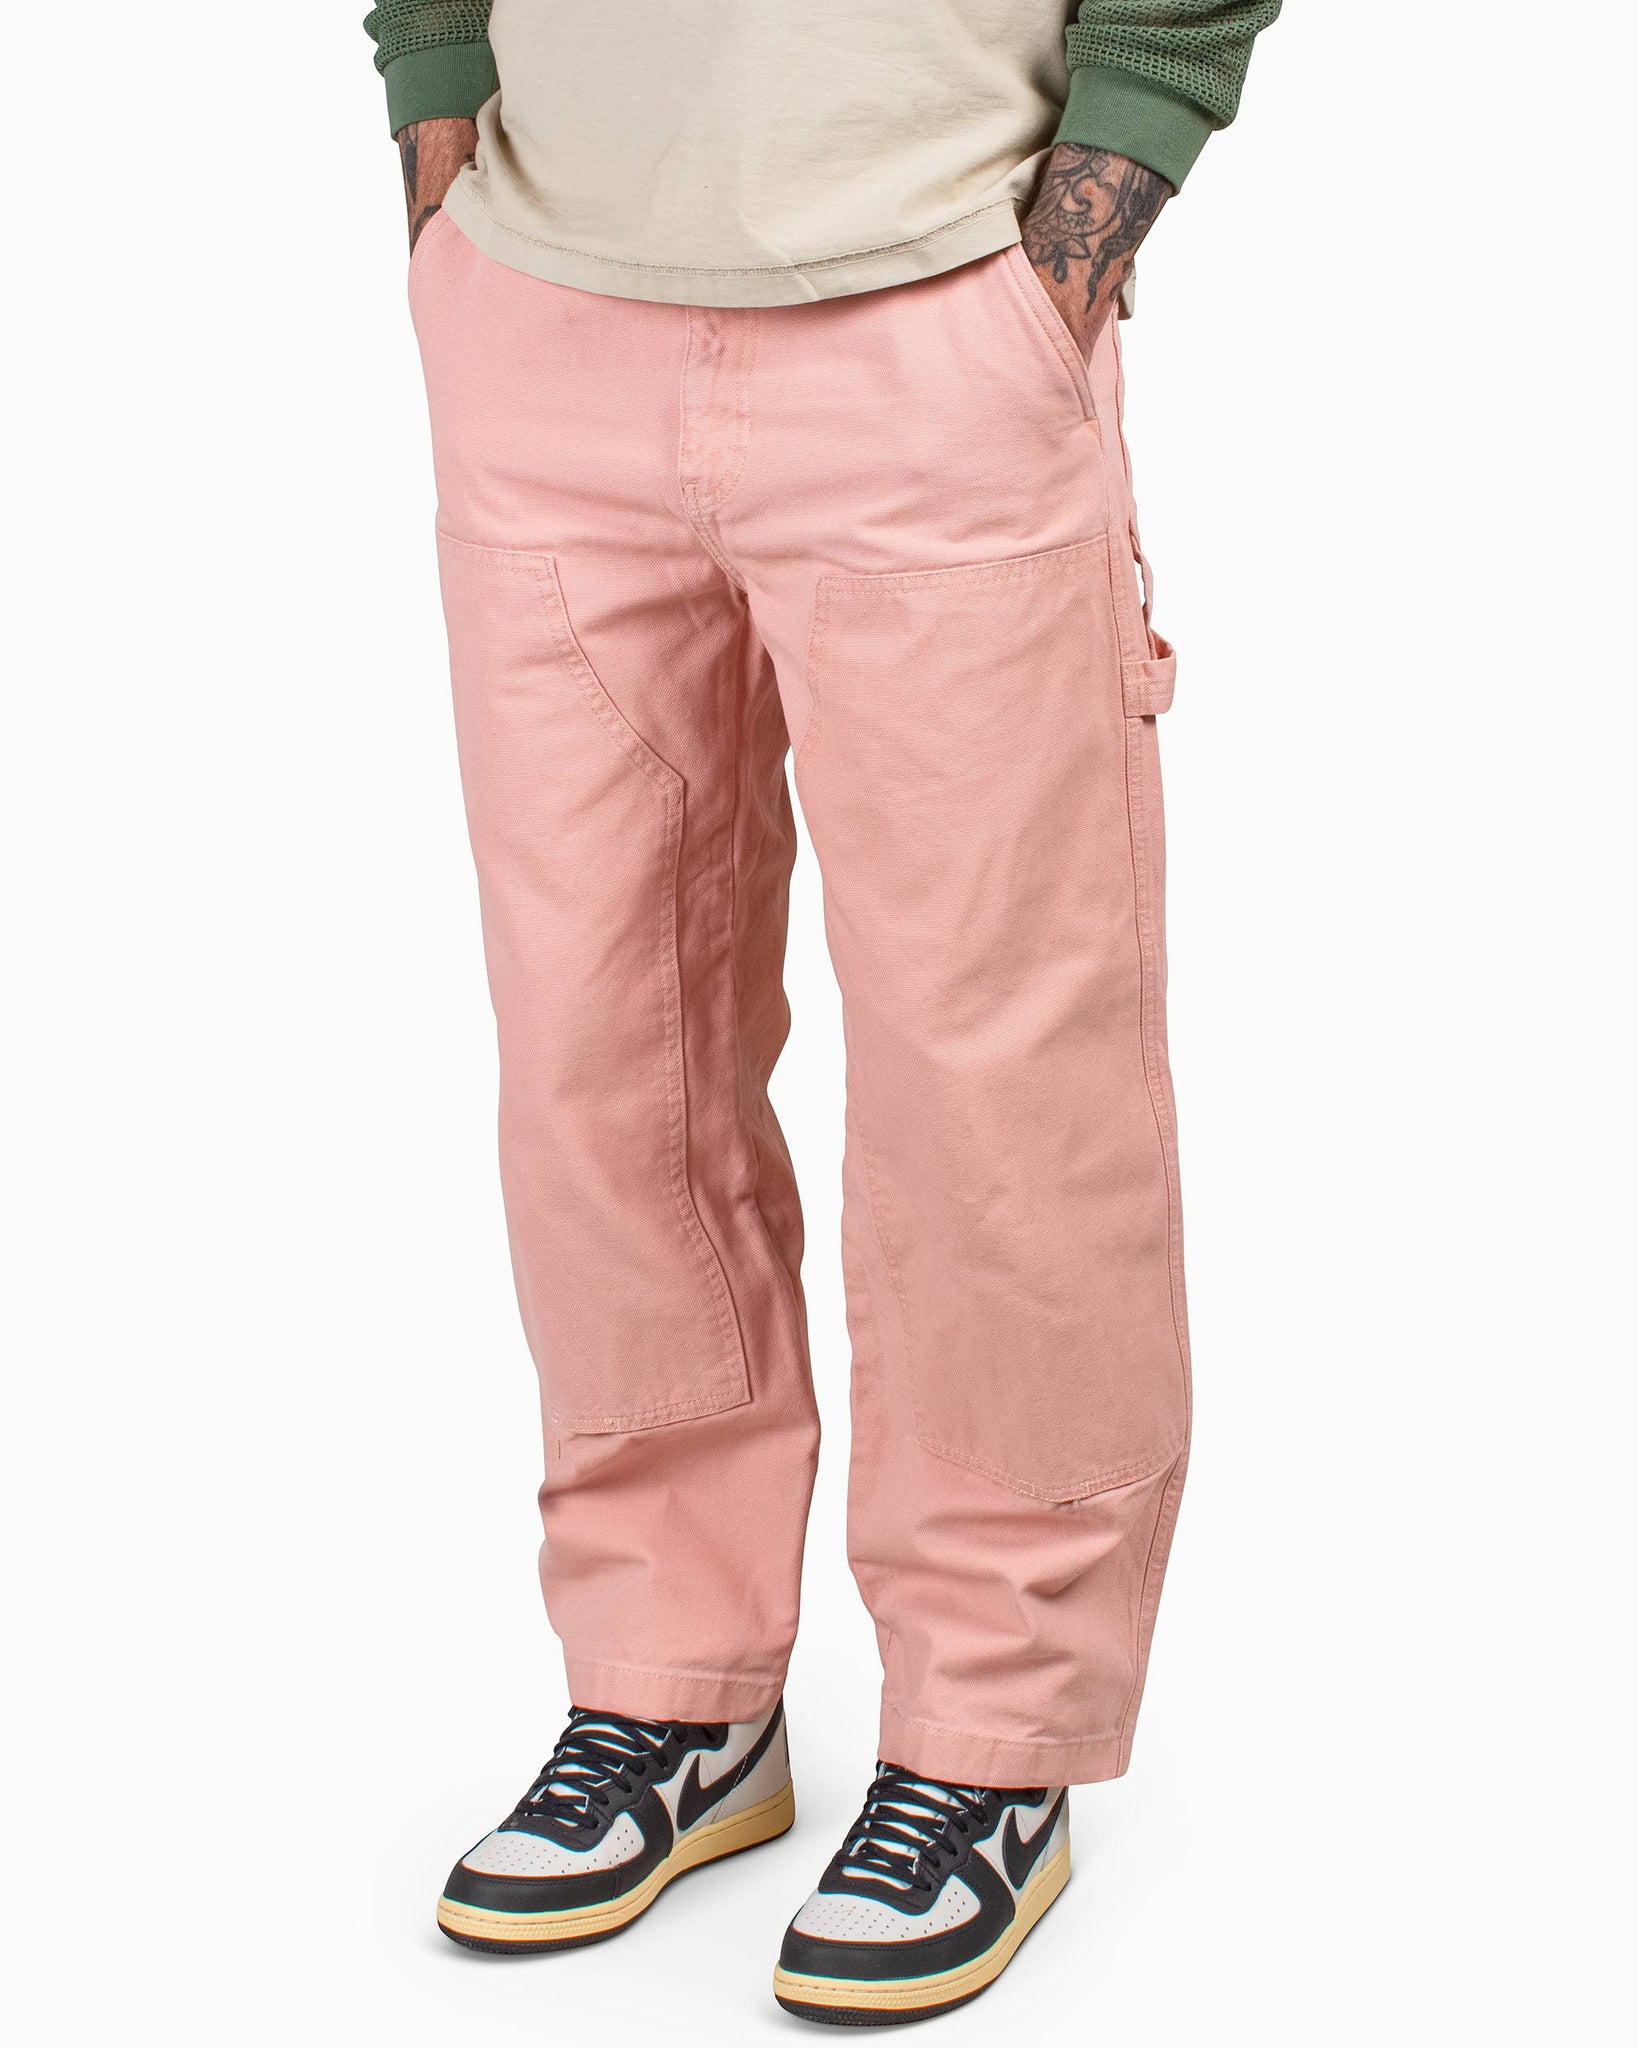 Stussy cavas work pants ピンク 34一度のみの着用です - ワークパンツ ...